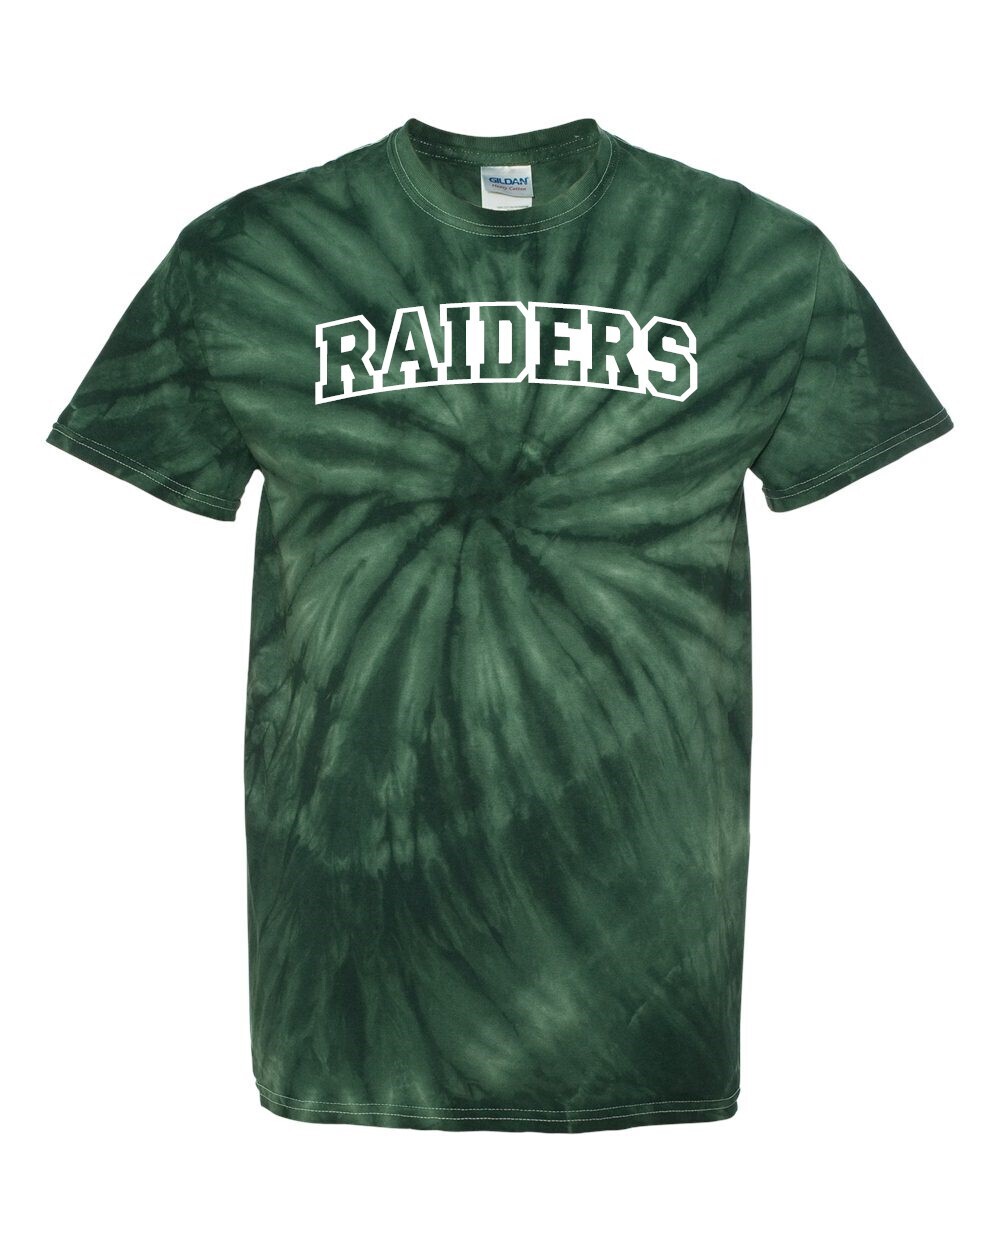 Raiders Tie Dye